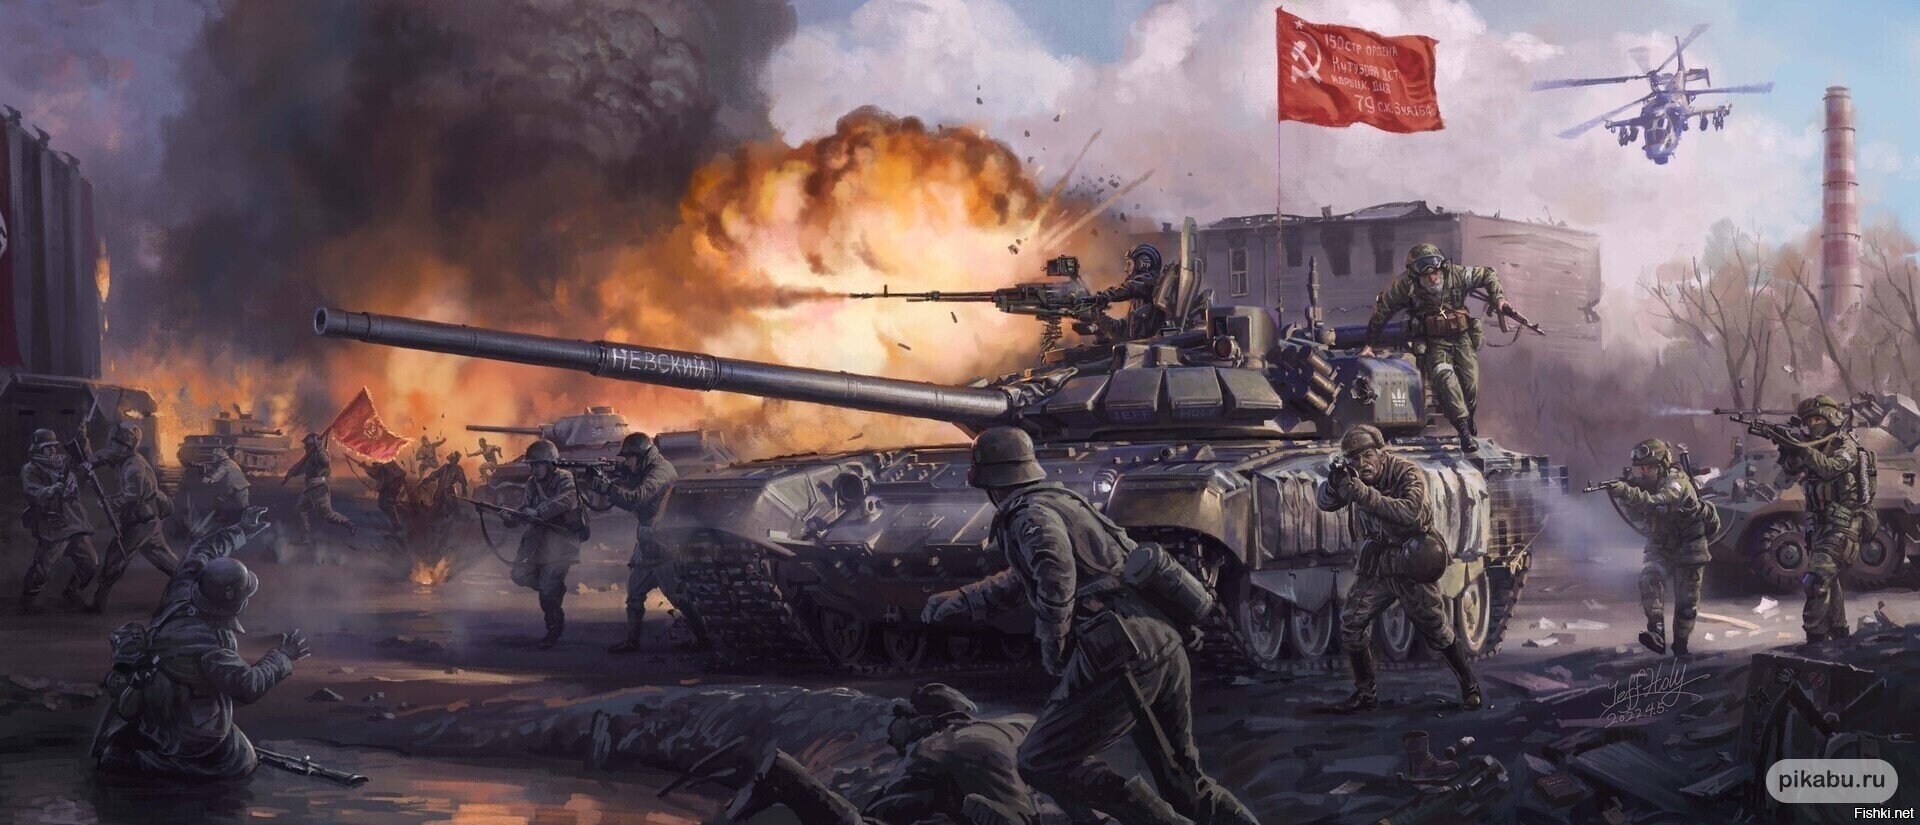 Китайский художник нарисовал картину "Война с нацистами 1941-2022"